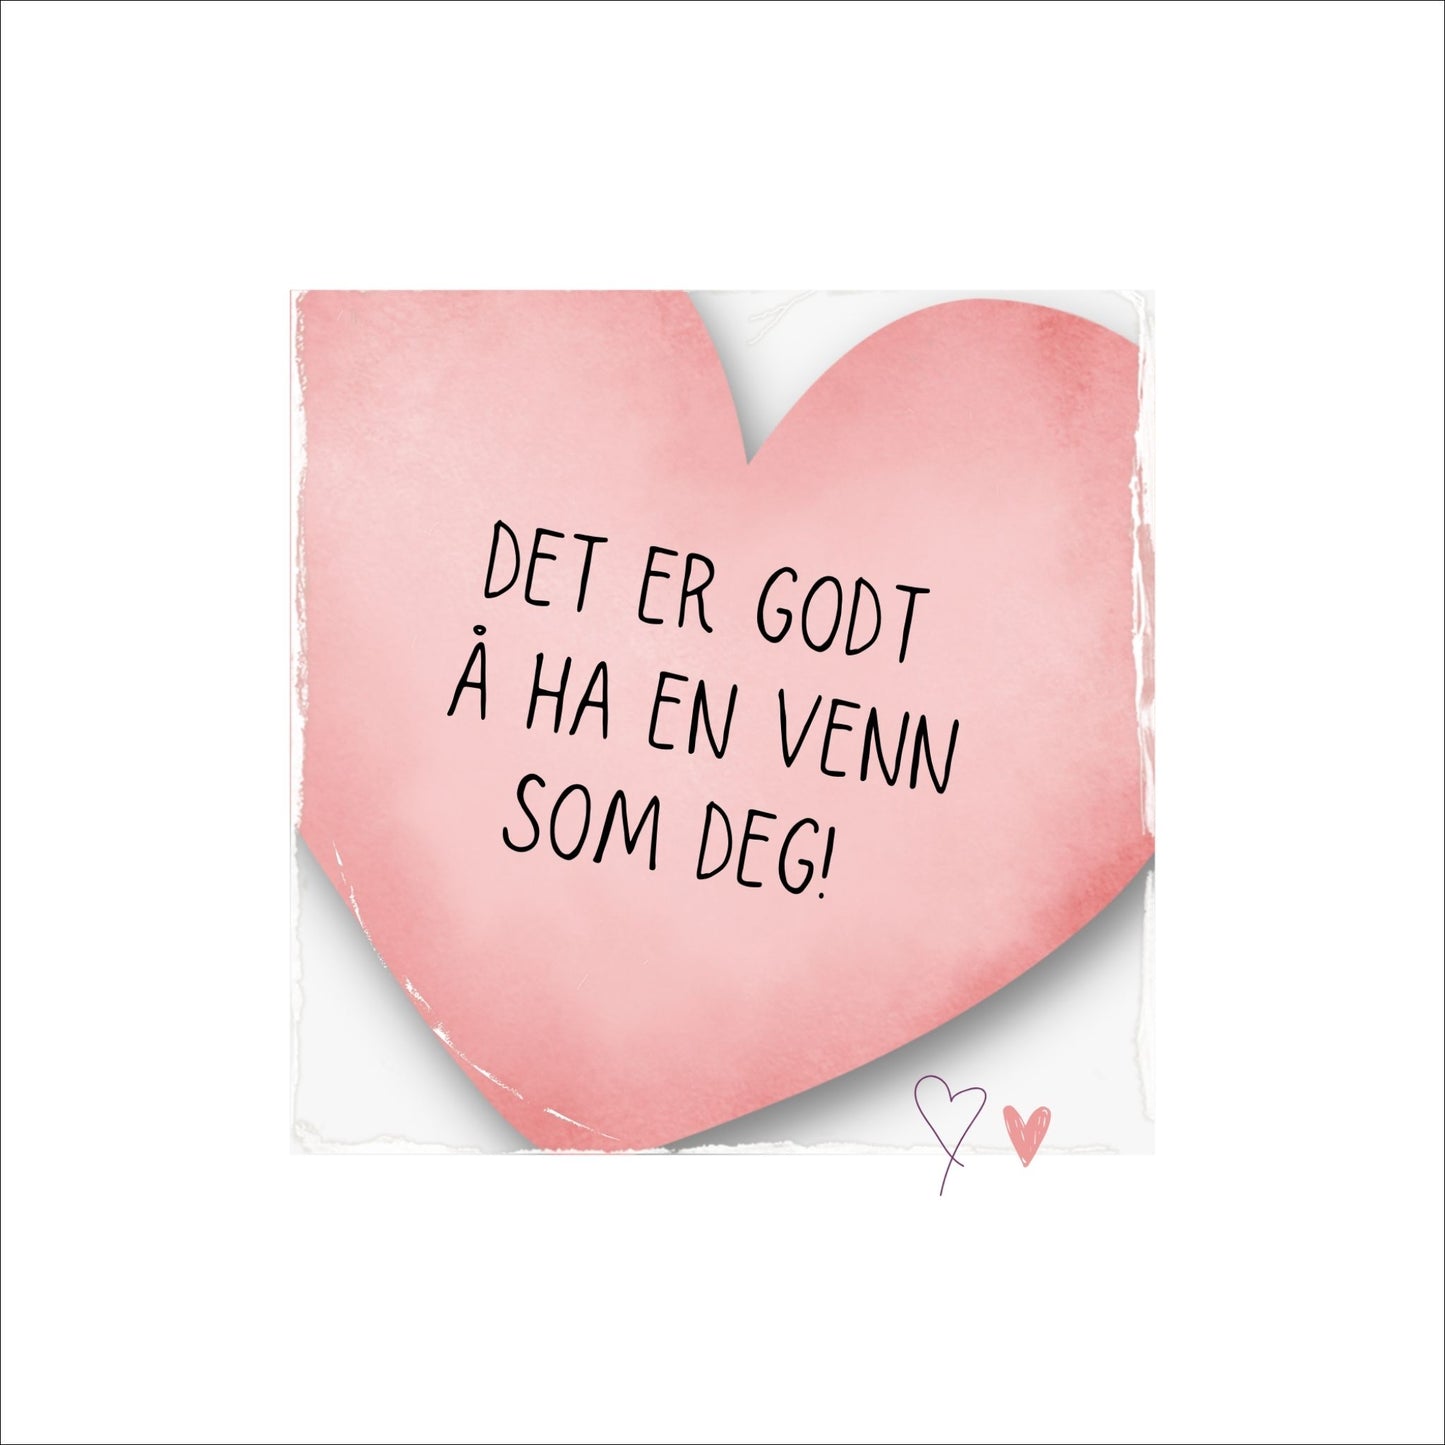 Plakat med rosa hjerte og tekst "Det er godt å ha en venn som deg". Med hvit kant på 4 cm. 